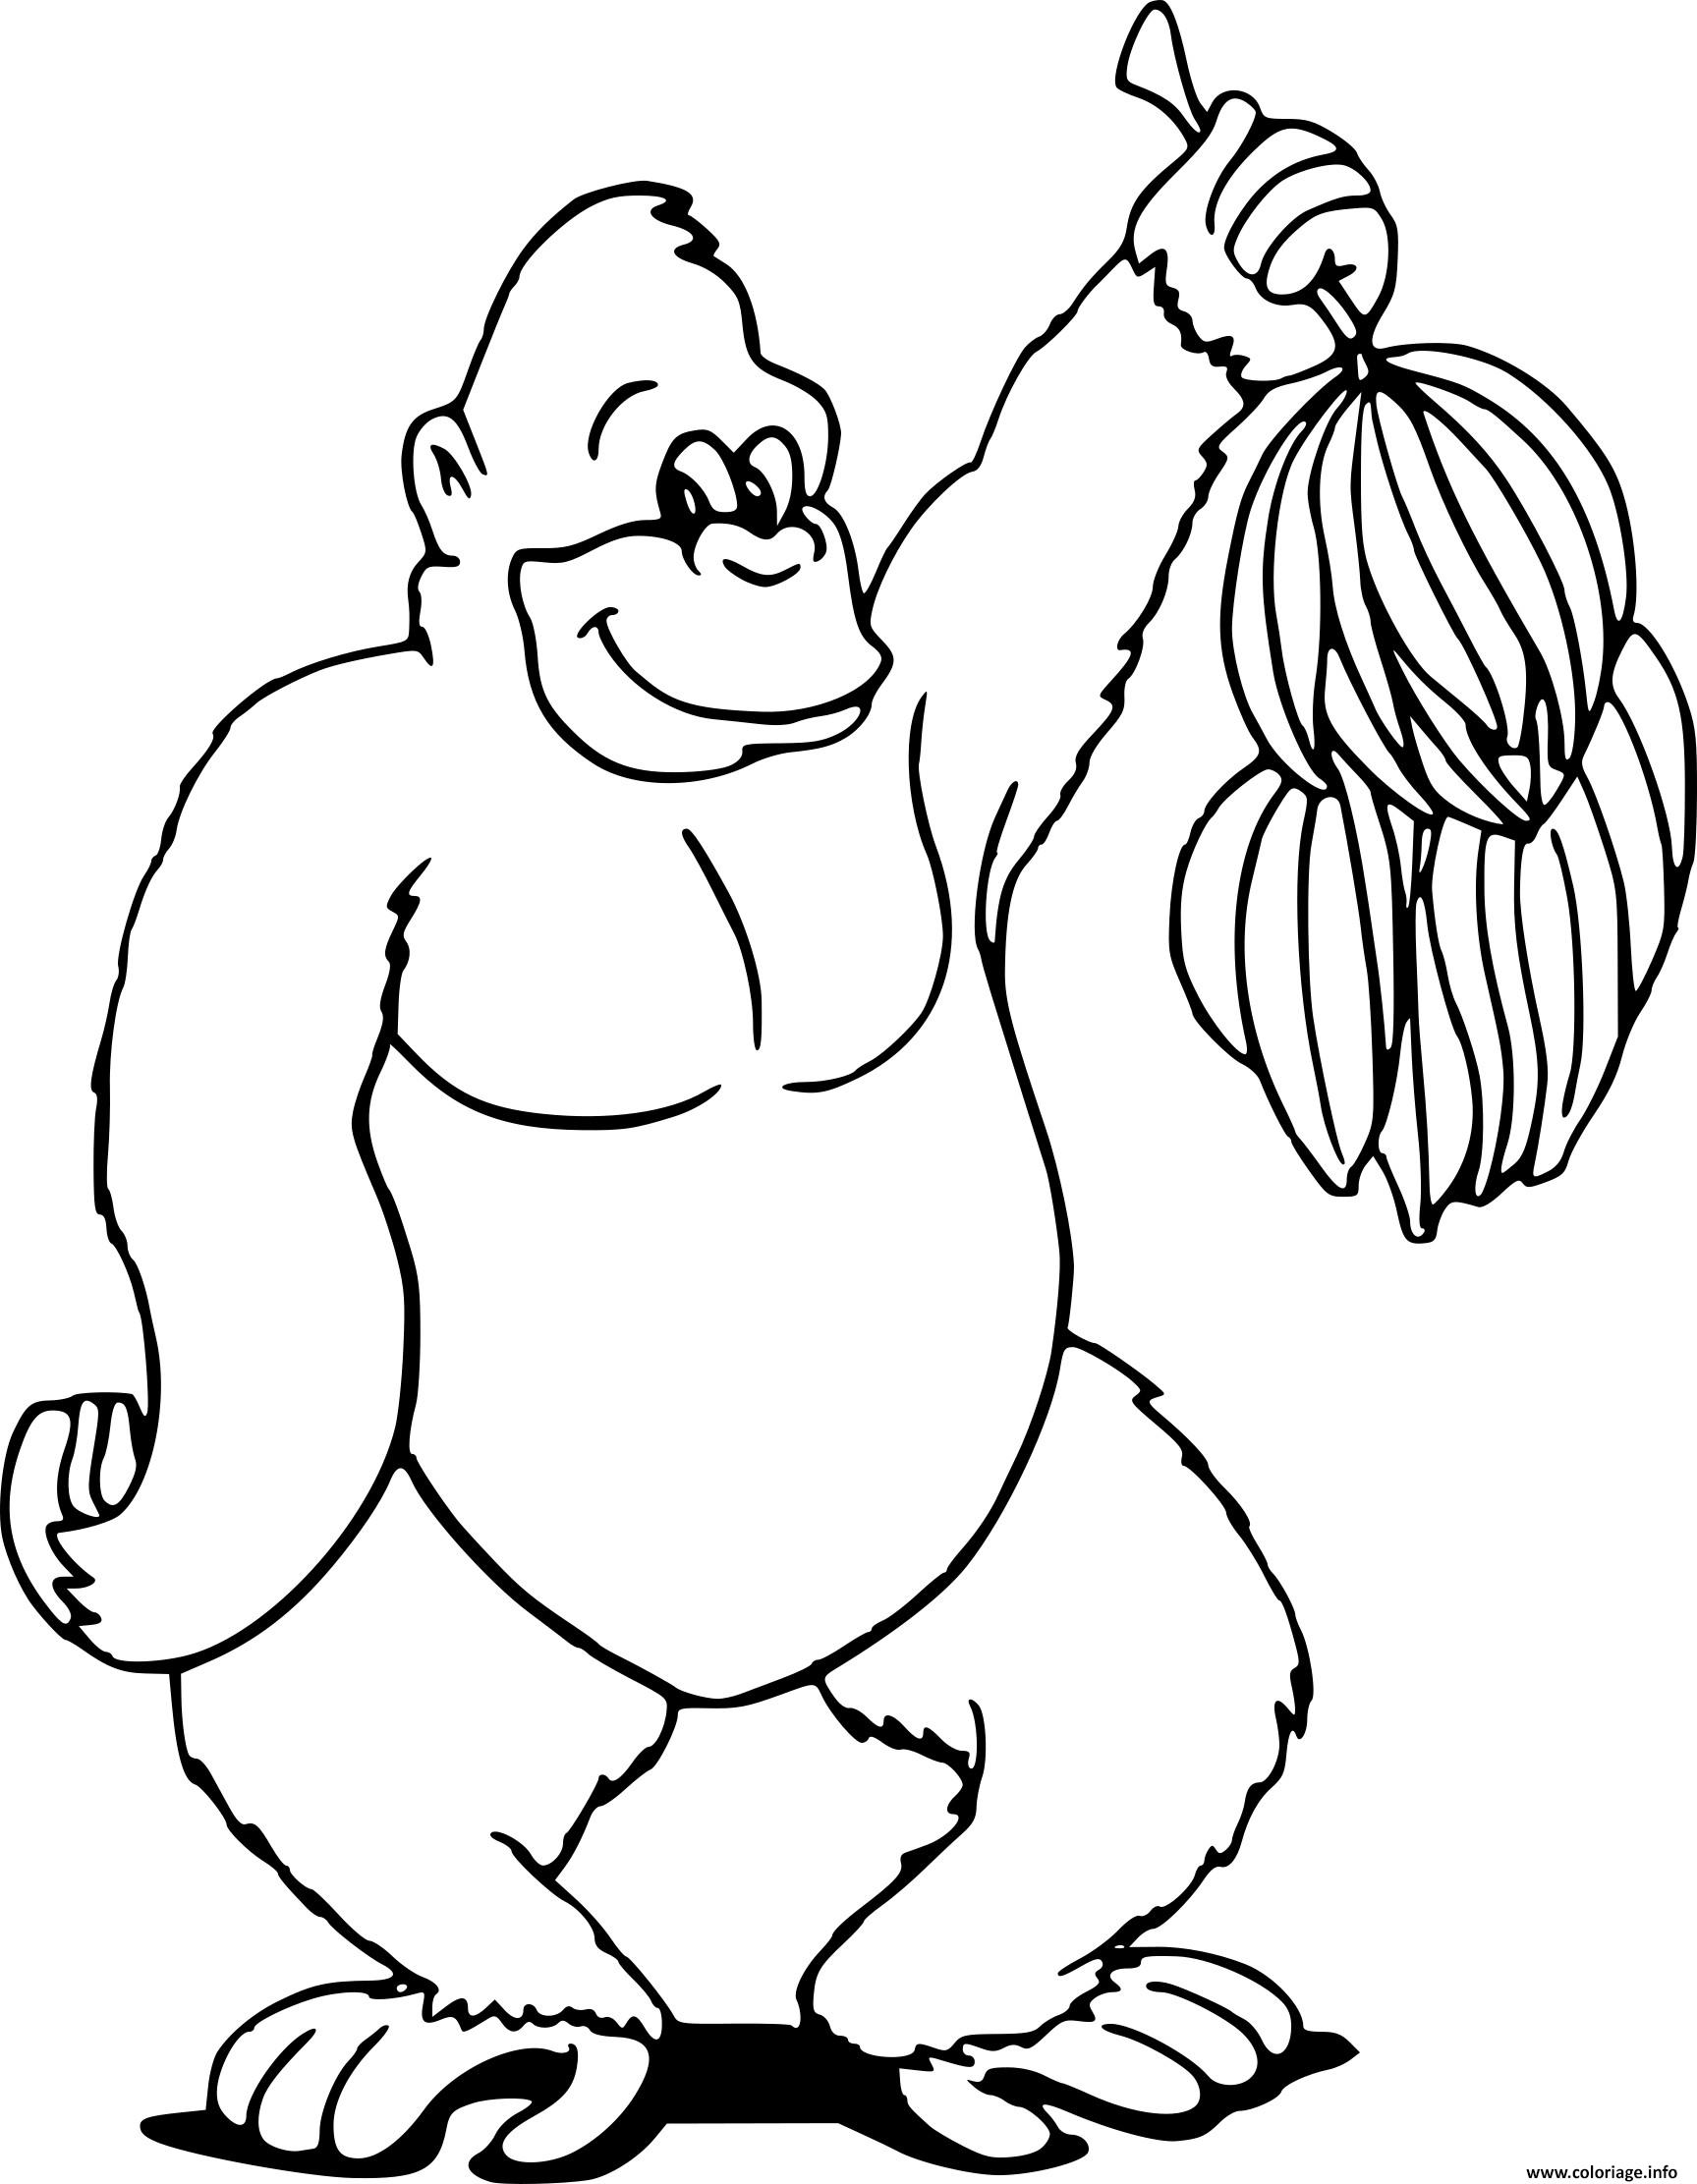 Раскраска горилла для детей 7 лет